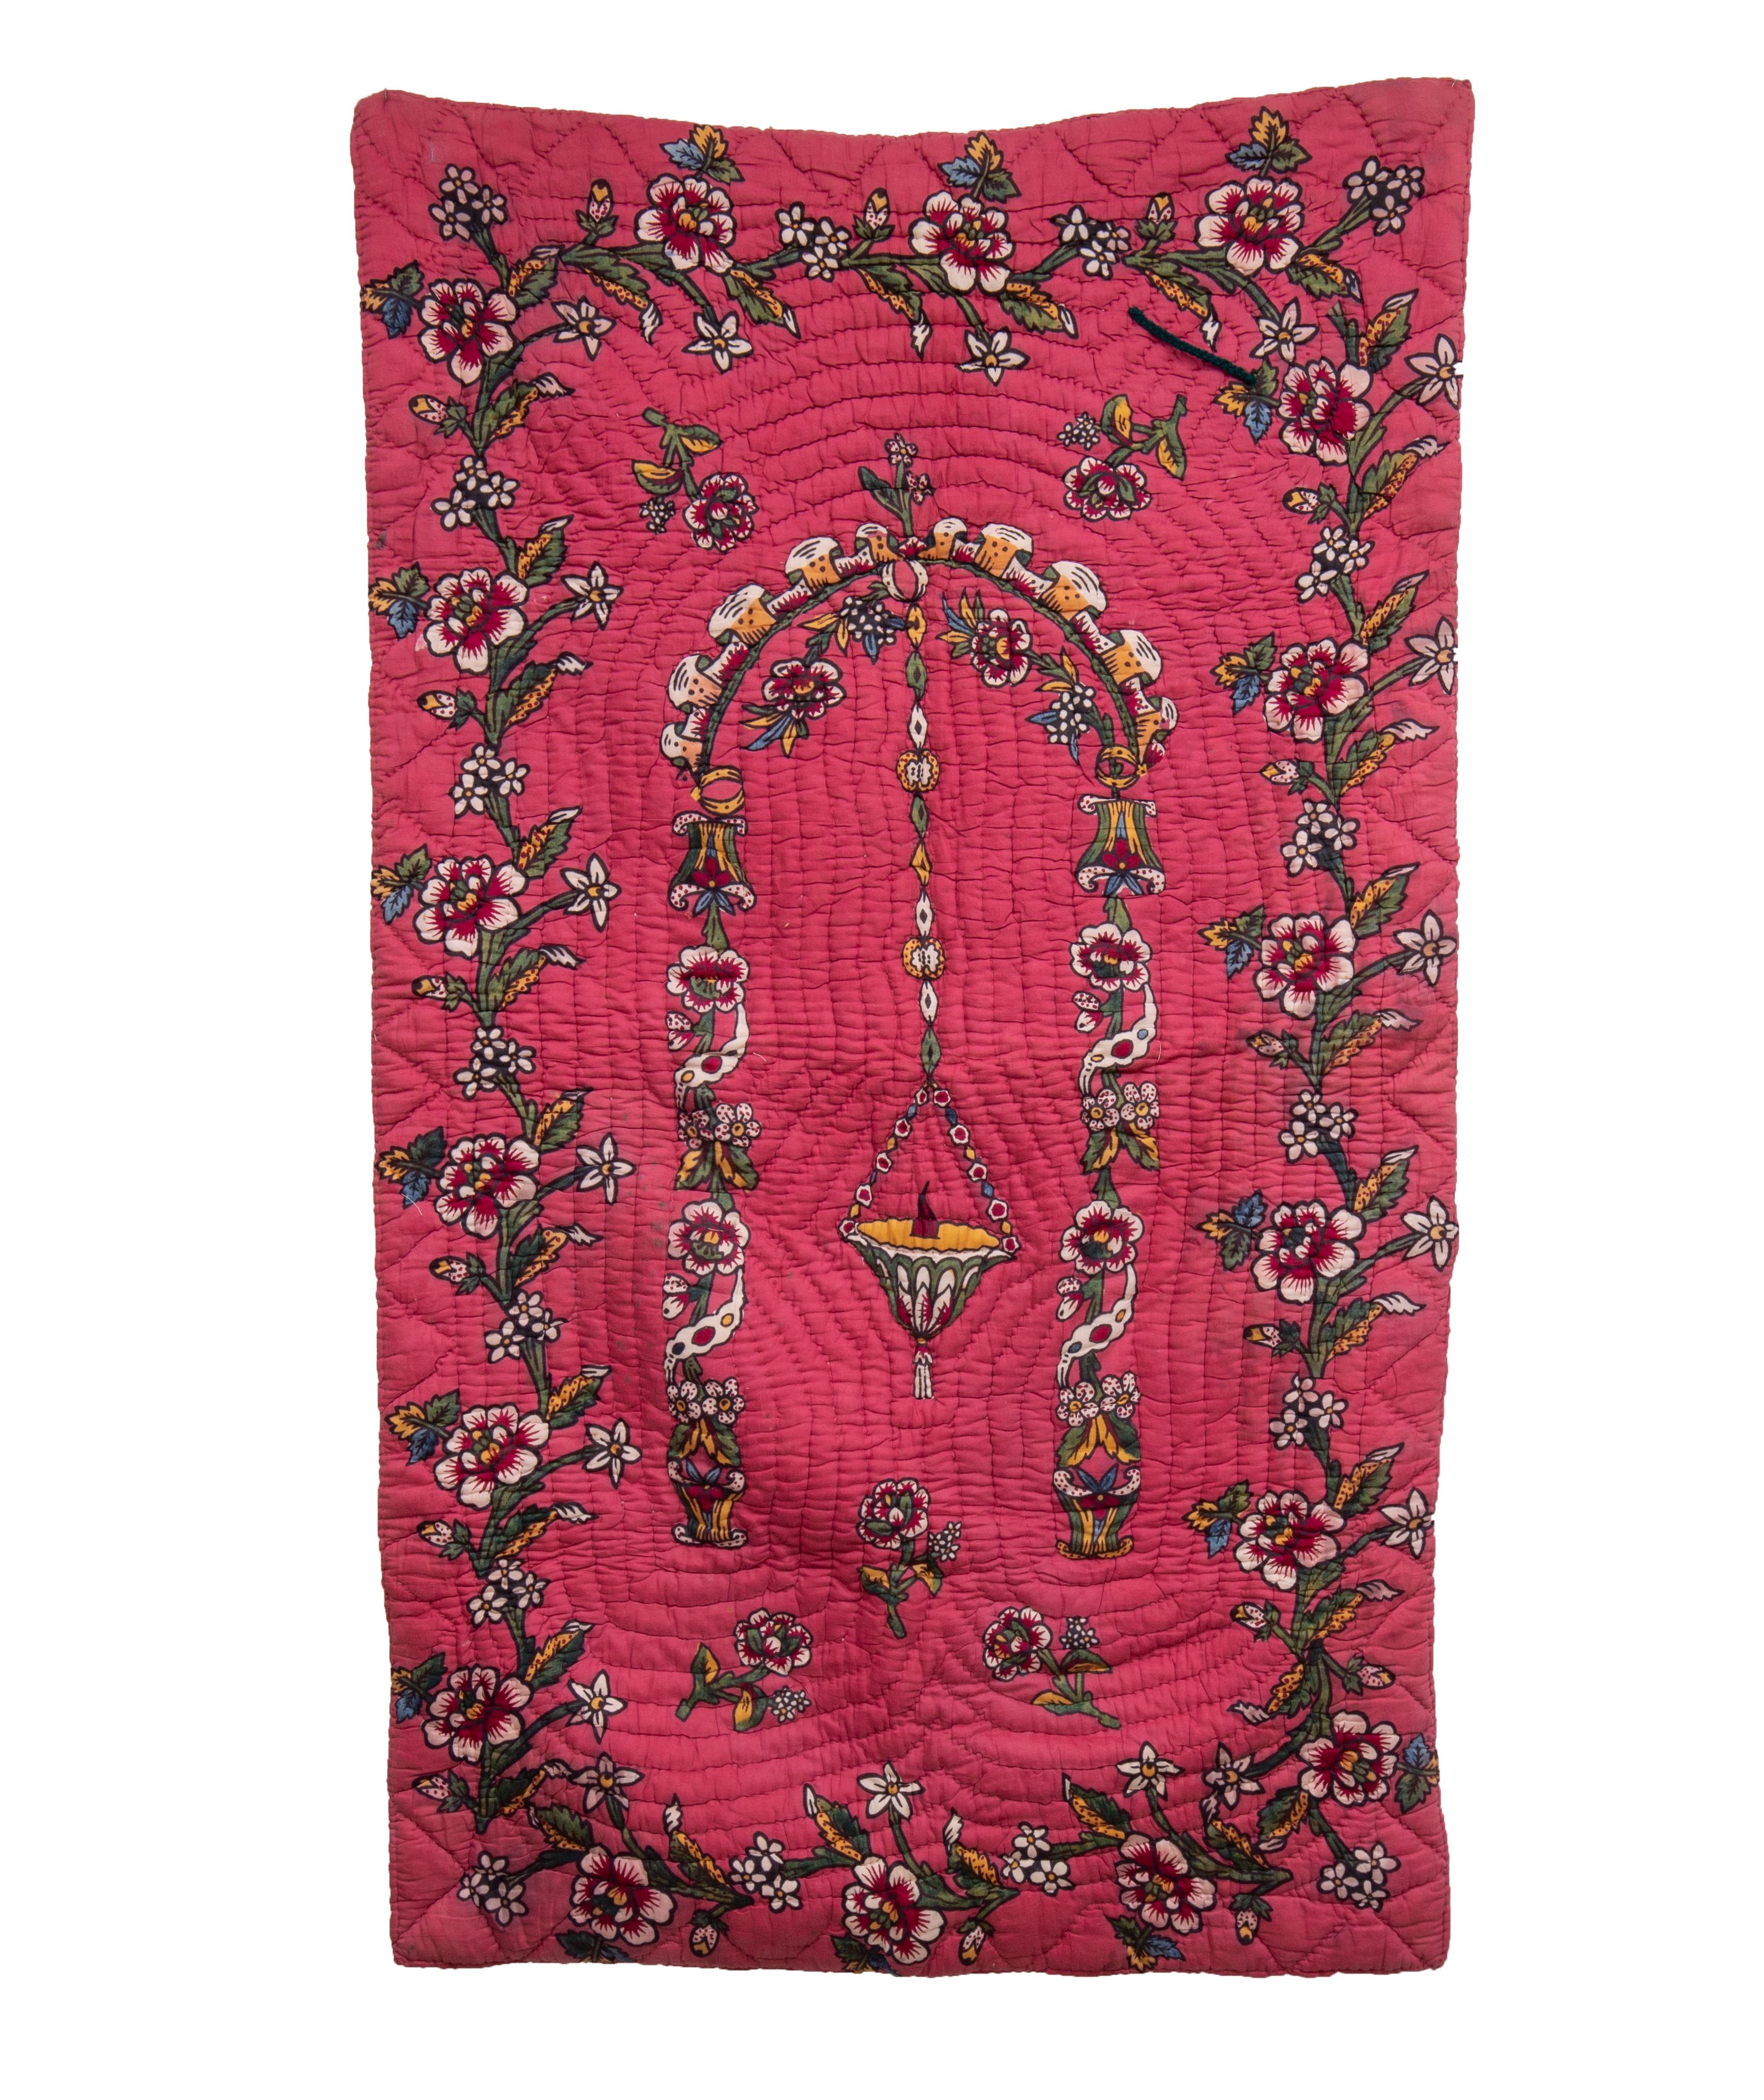 L'impression à la main est l'un des signes distinctifs de la culture matérielle de l'Anatolie occidentale. Ces quilts ont été utilisés comme tapis de prière ou comme décoration murale.